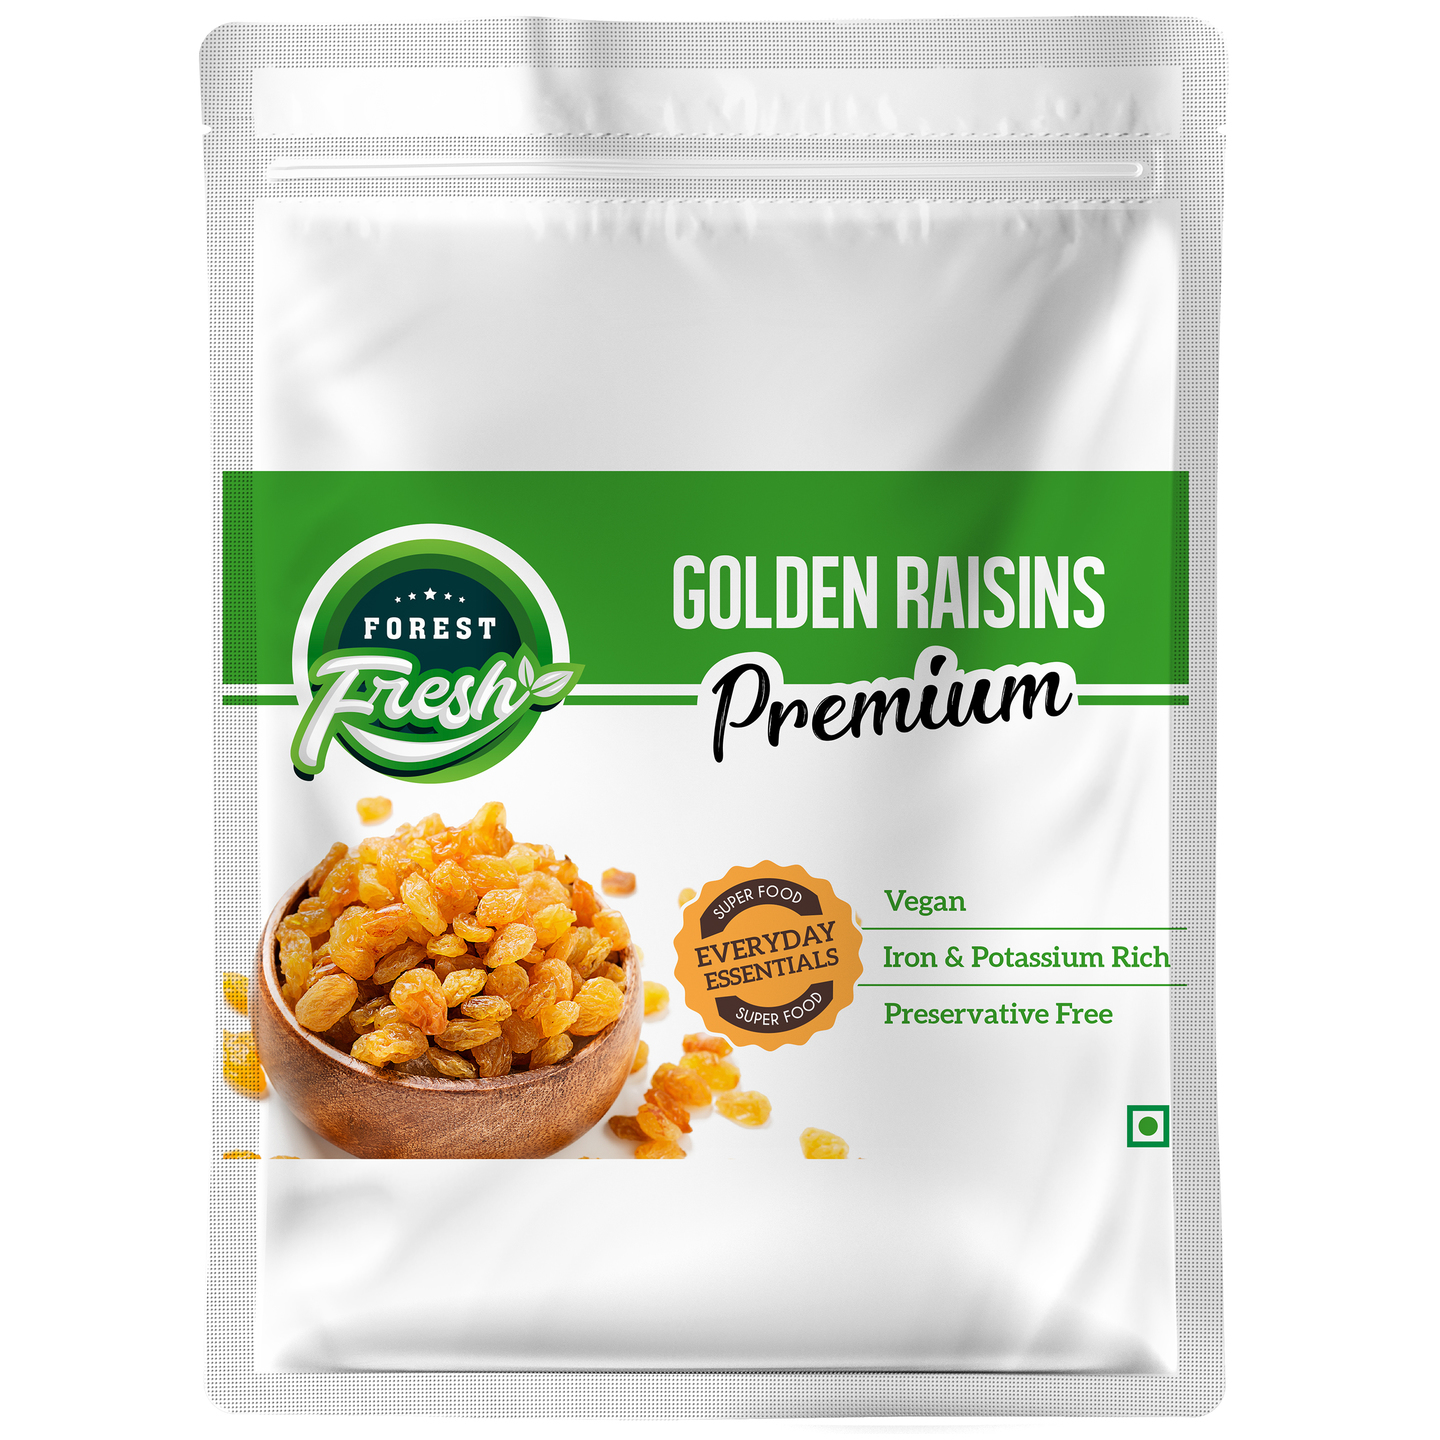 Forest Fresh 100 Natural - Premium Golden Raisins Kishmish - 400g